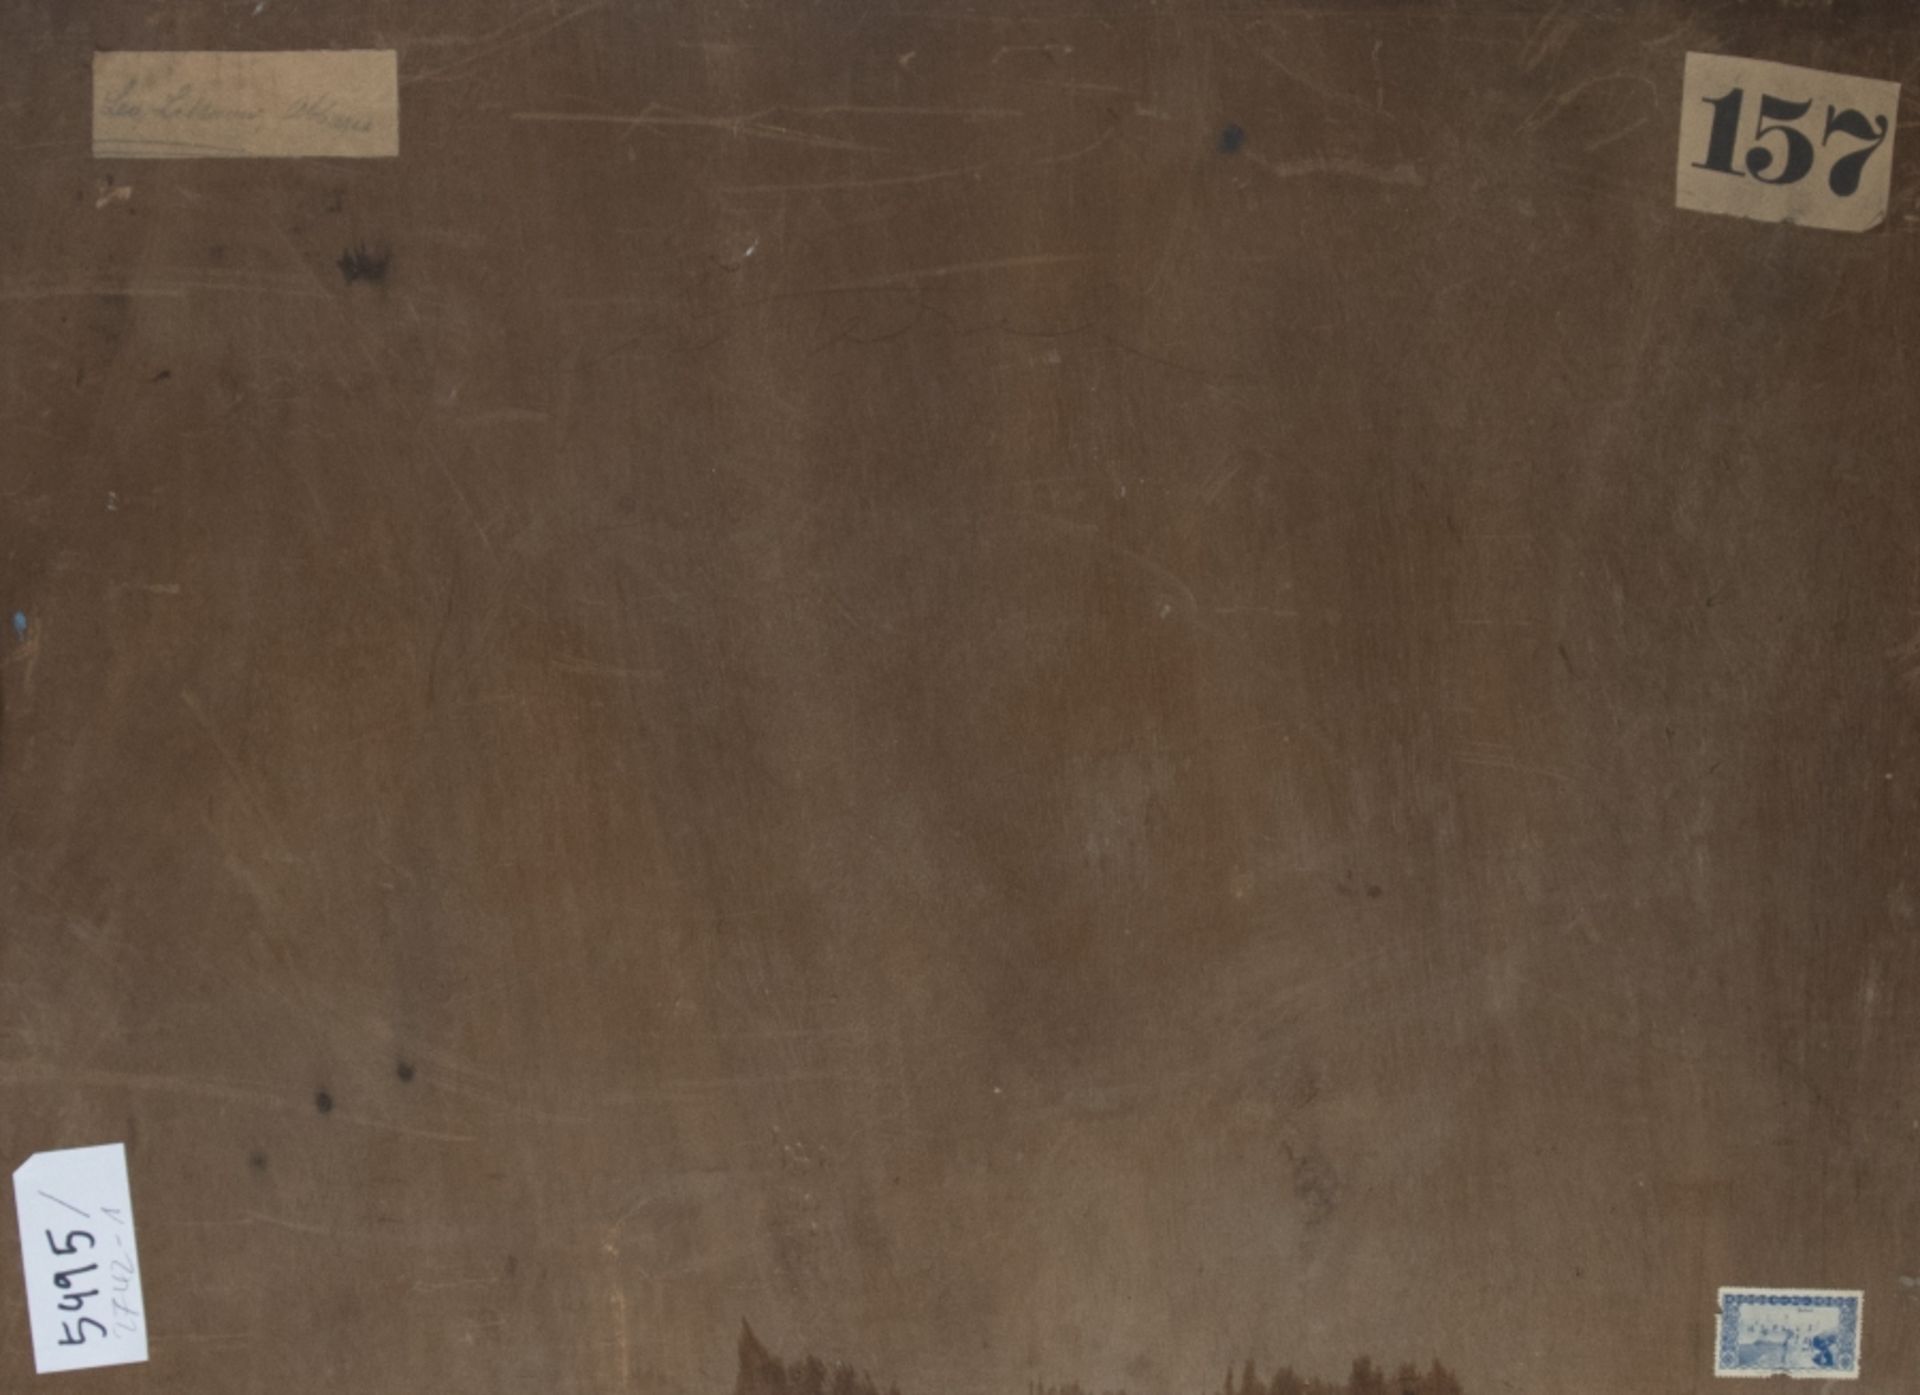 Lea von Littrow Umkreis1860 - 1925Südländische LandschaftÖl auf Tischlerplatte; H 48 cm - Bild 2 aus 2